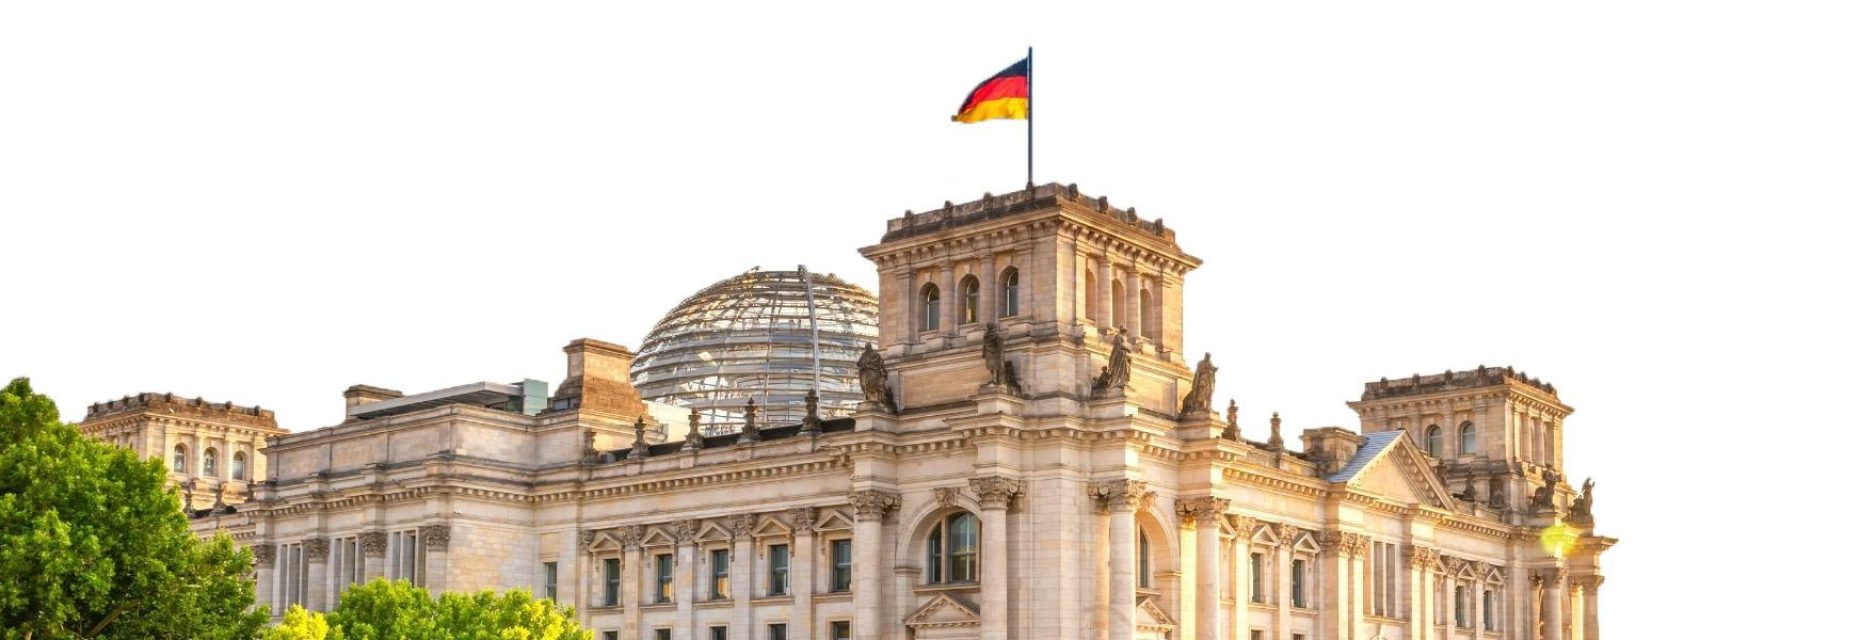 Bundestag, a must-visit sight duirng weekend break to Berlin